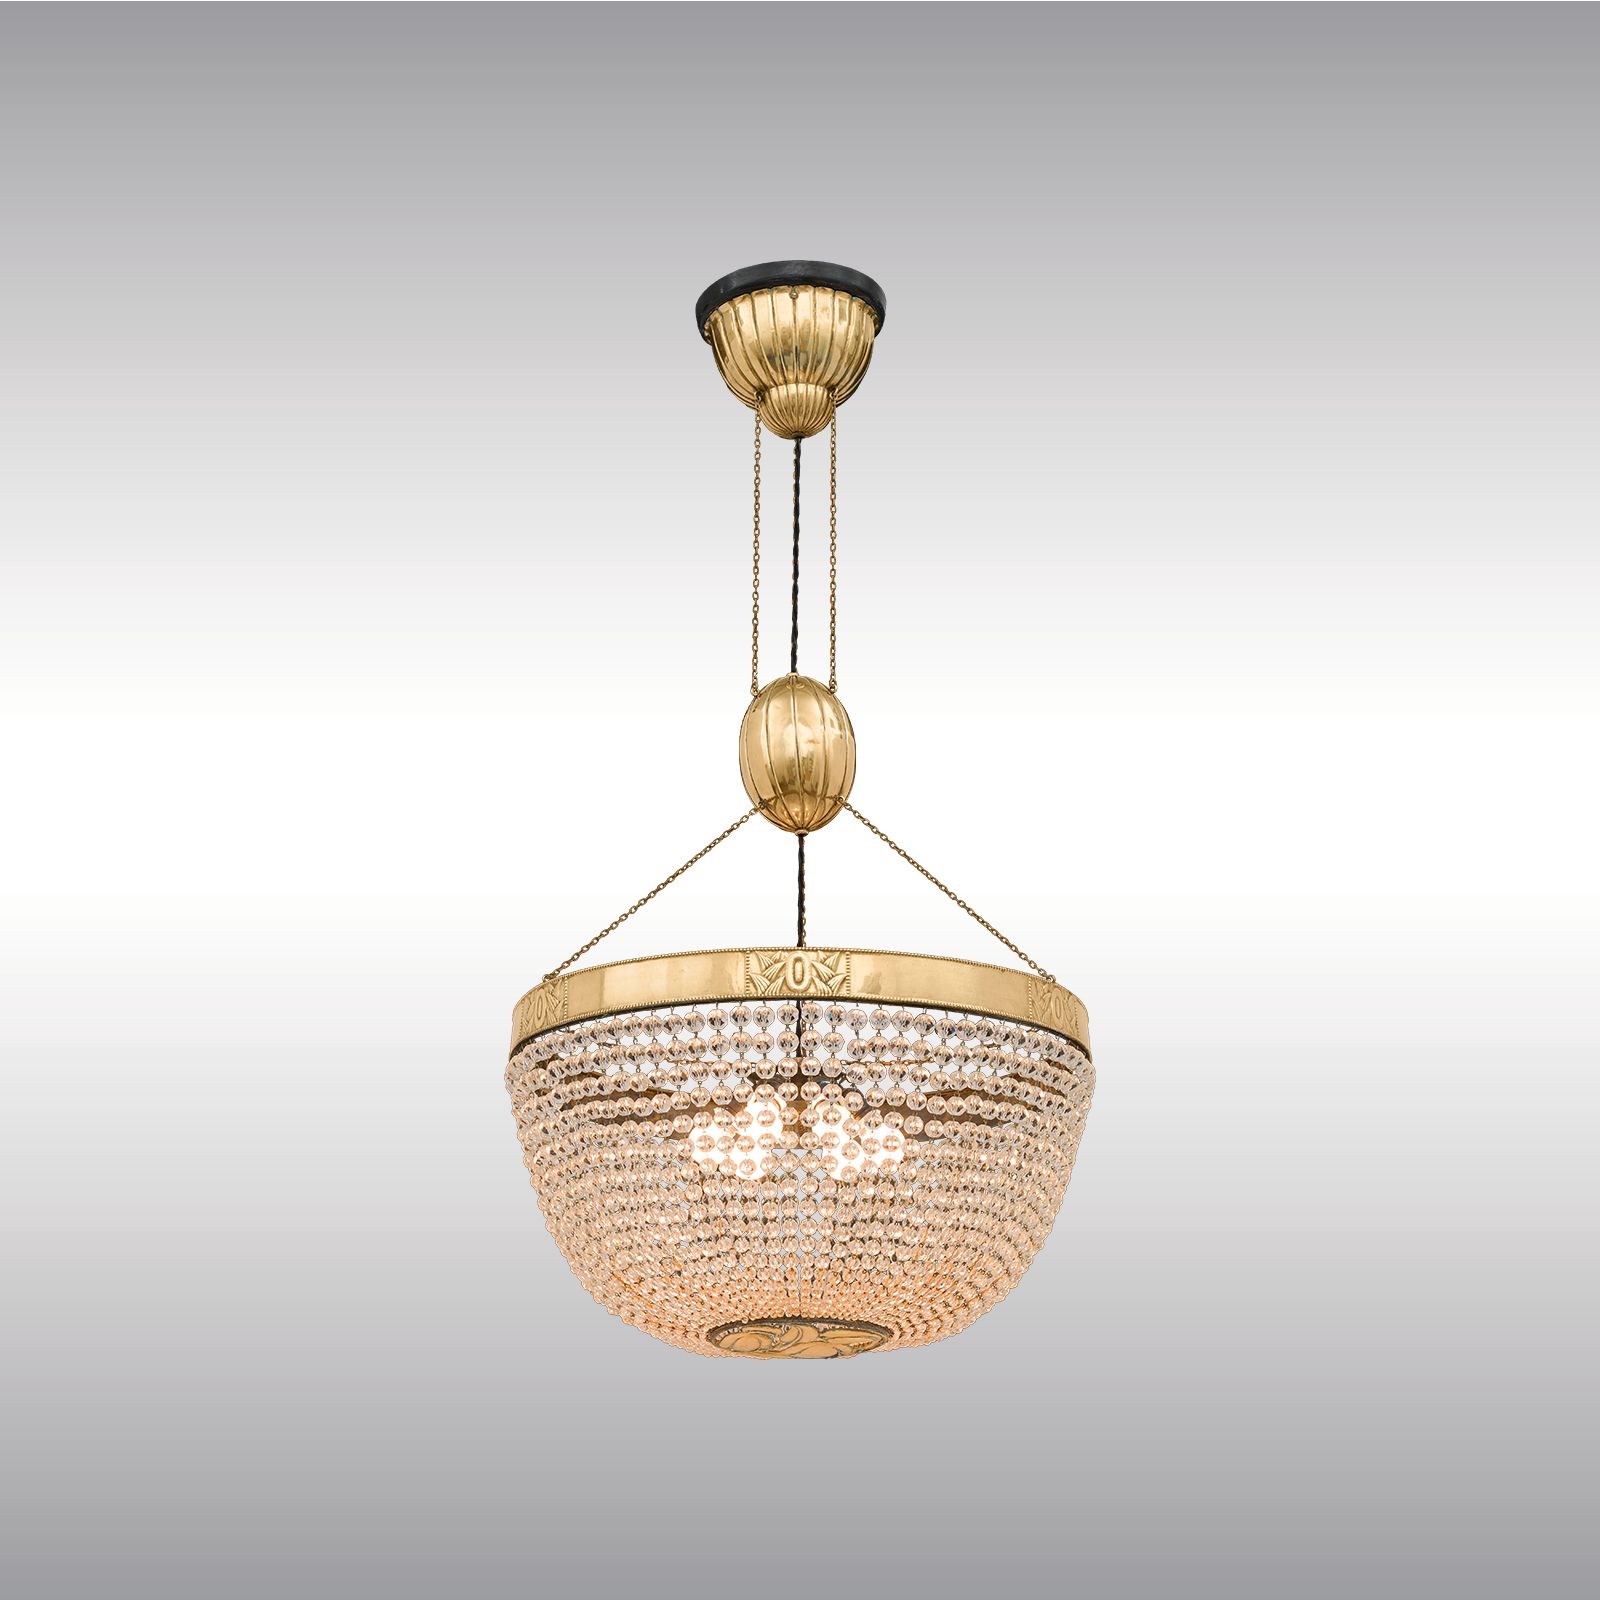 WOKA LAMPS VIENNA - OrderNr.: 22302|Otto Boehler Chandelier - Design: Josef Hoffmann